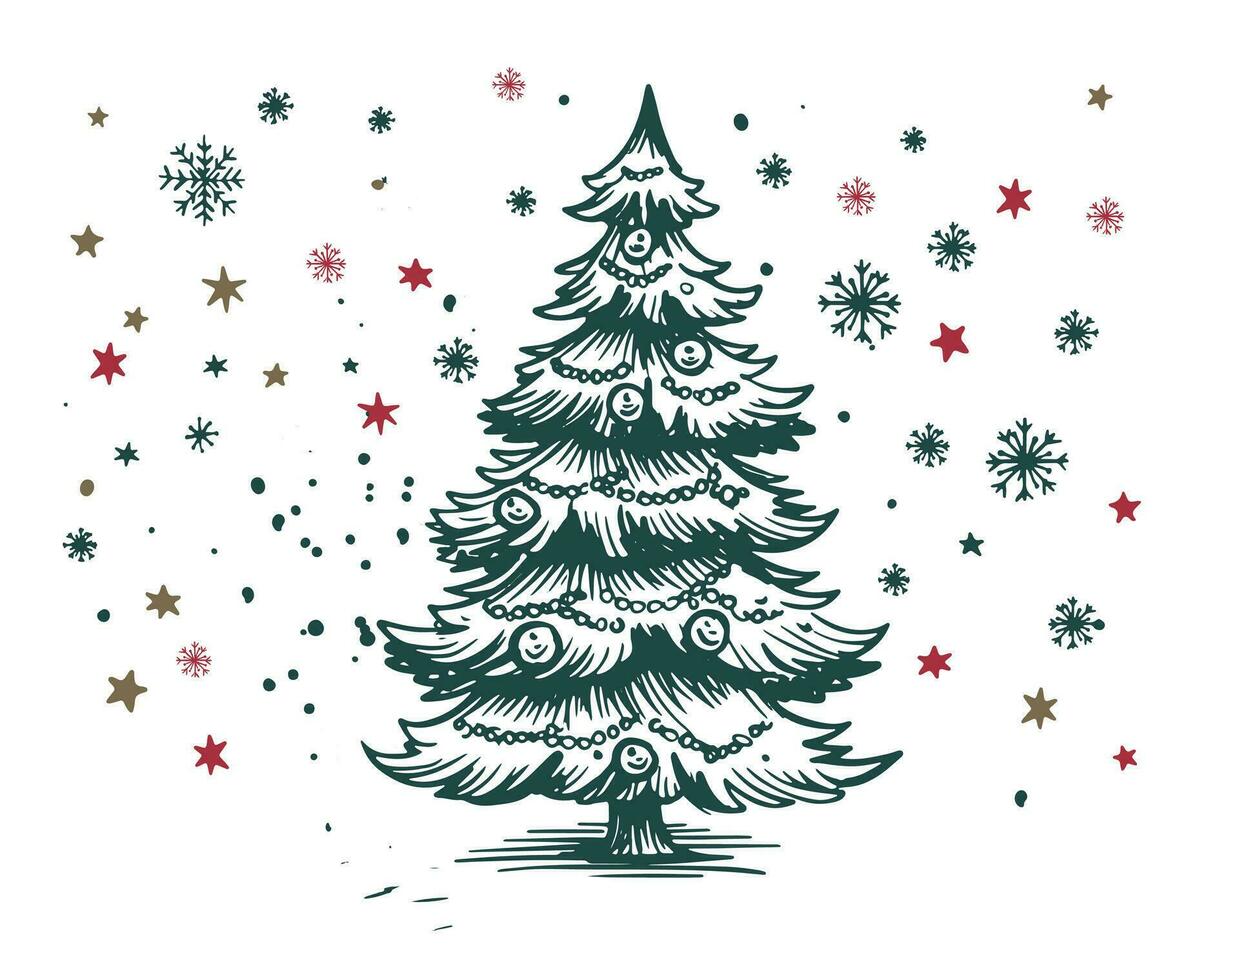 jul träd uppsättning hand dragen illustration vektor